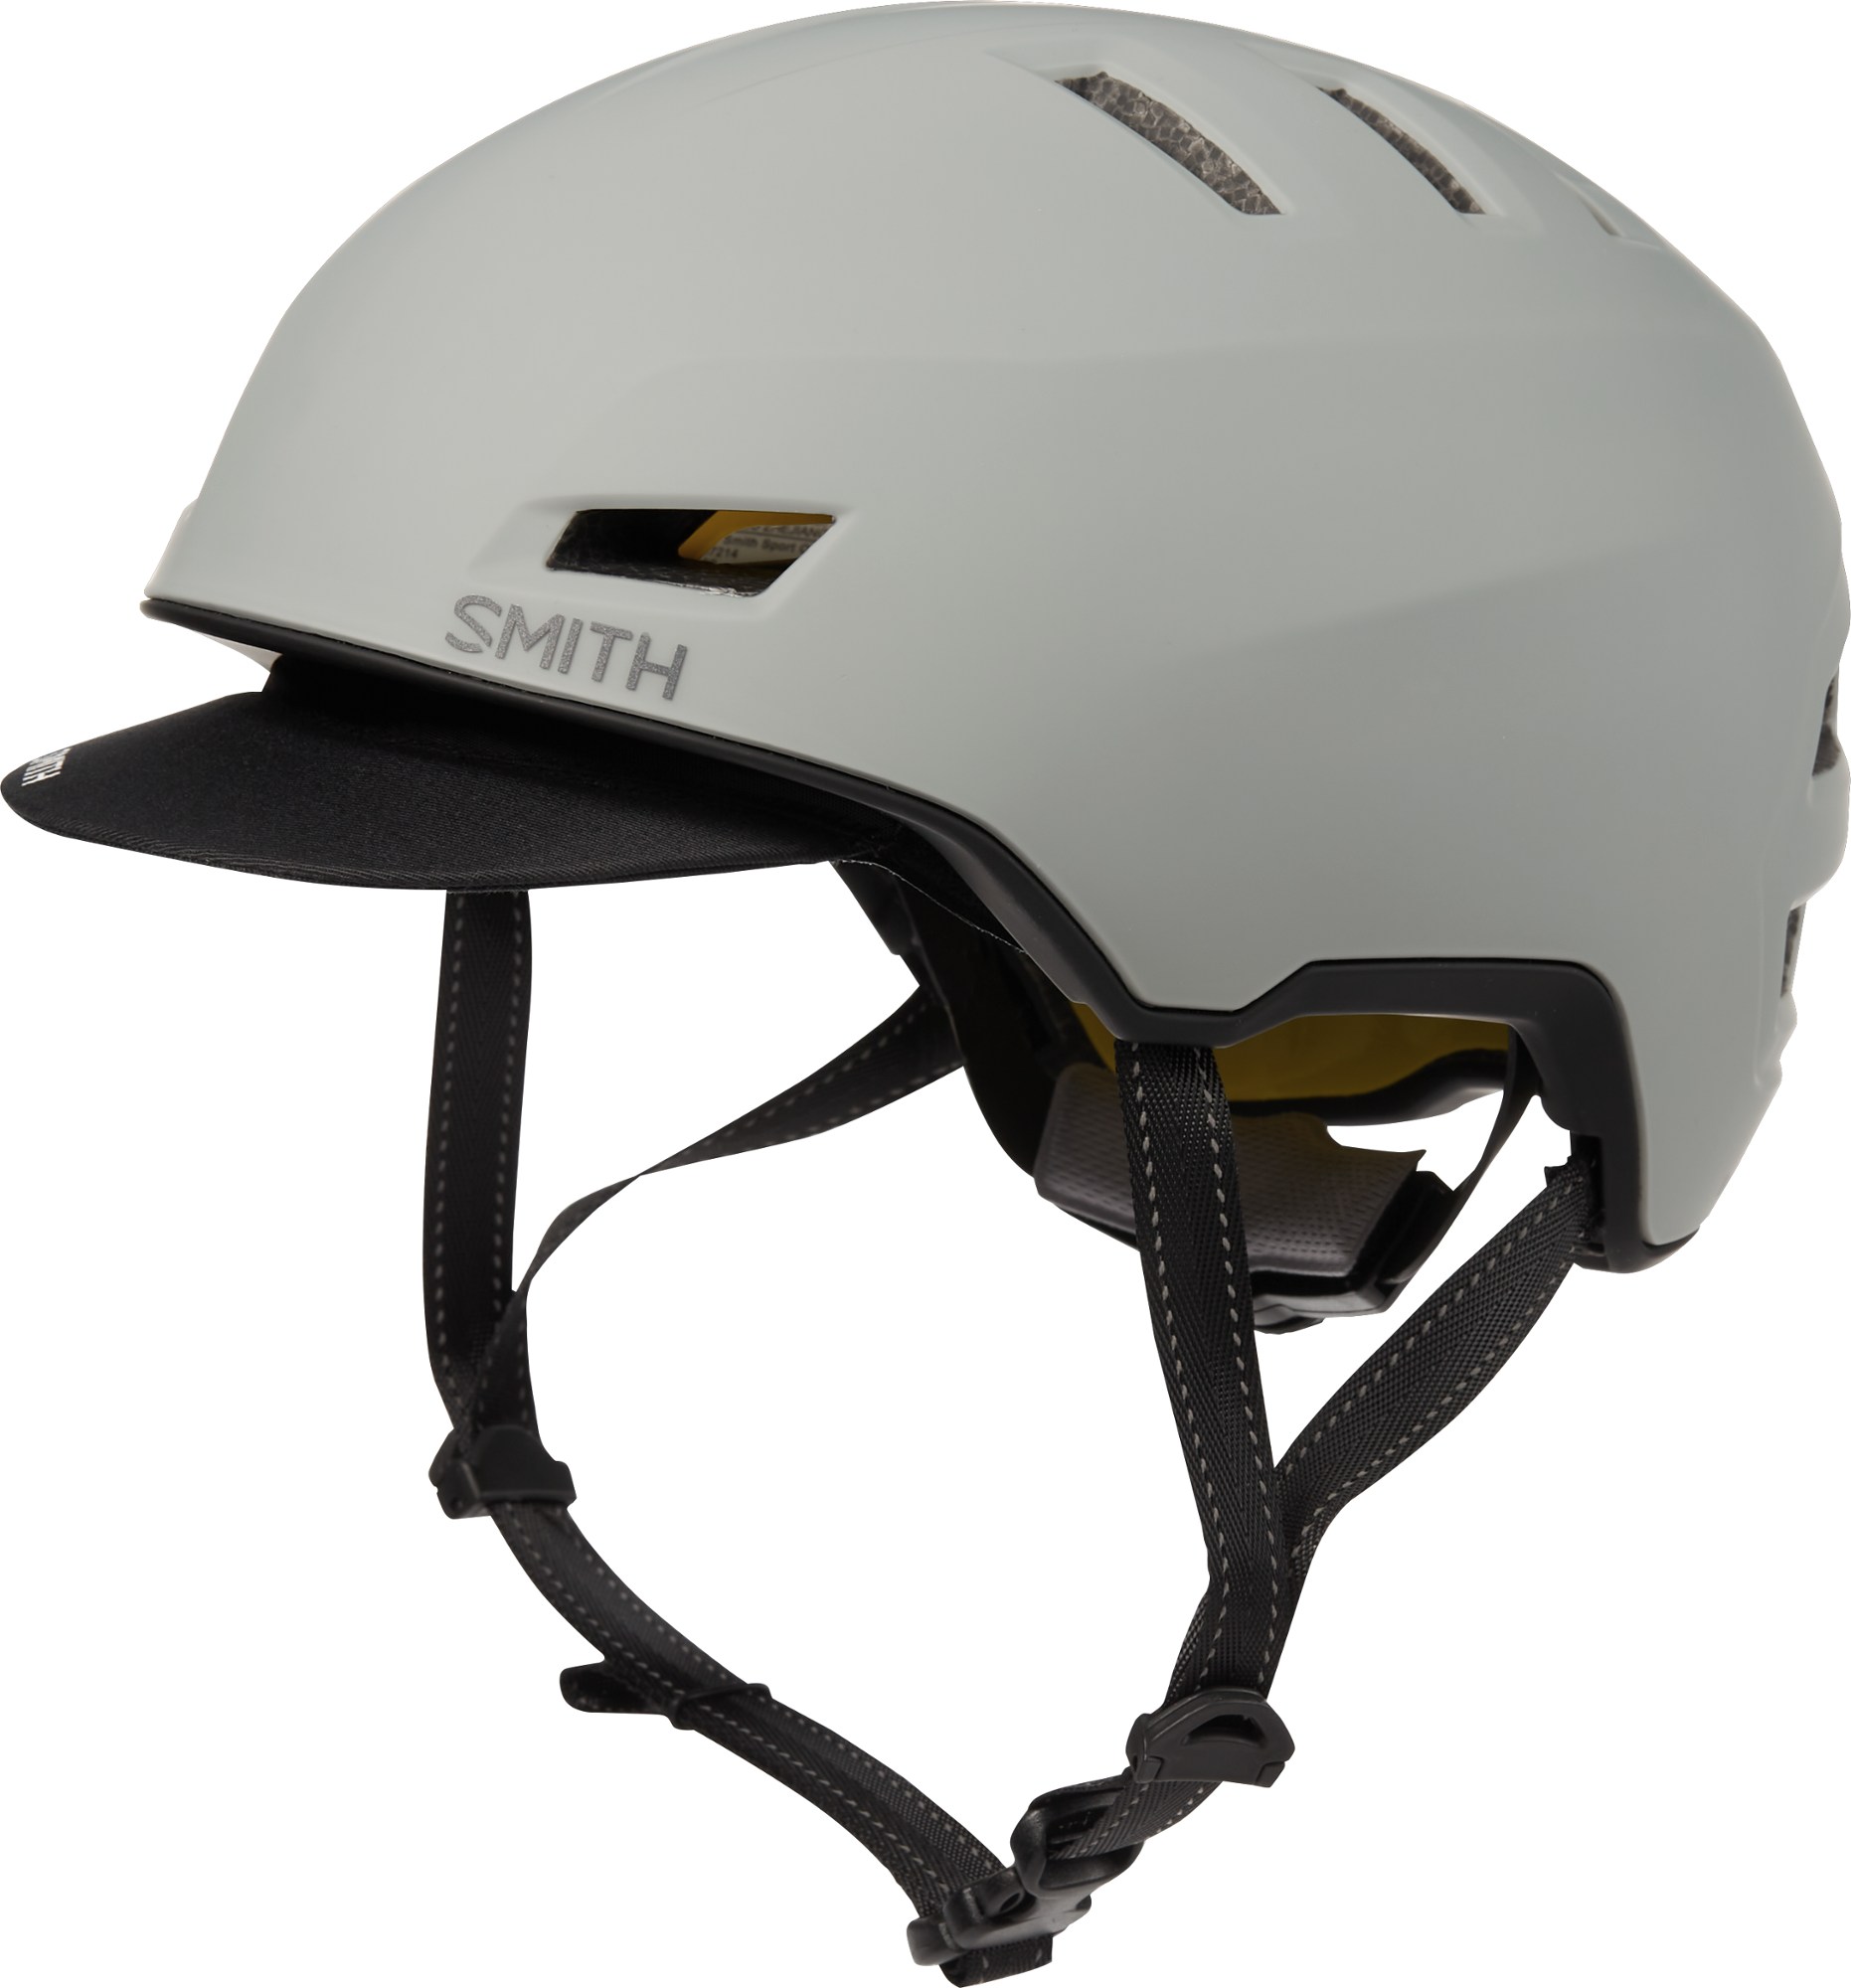 Велосипедный шлем Express MIPS Smith, серый